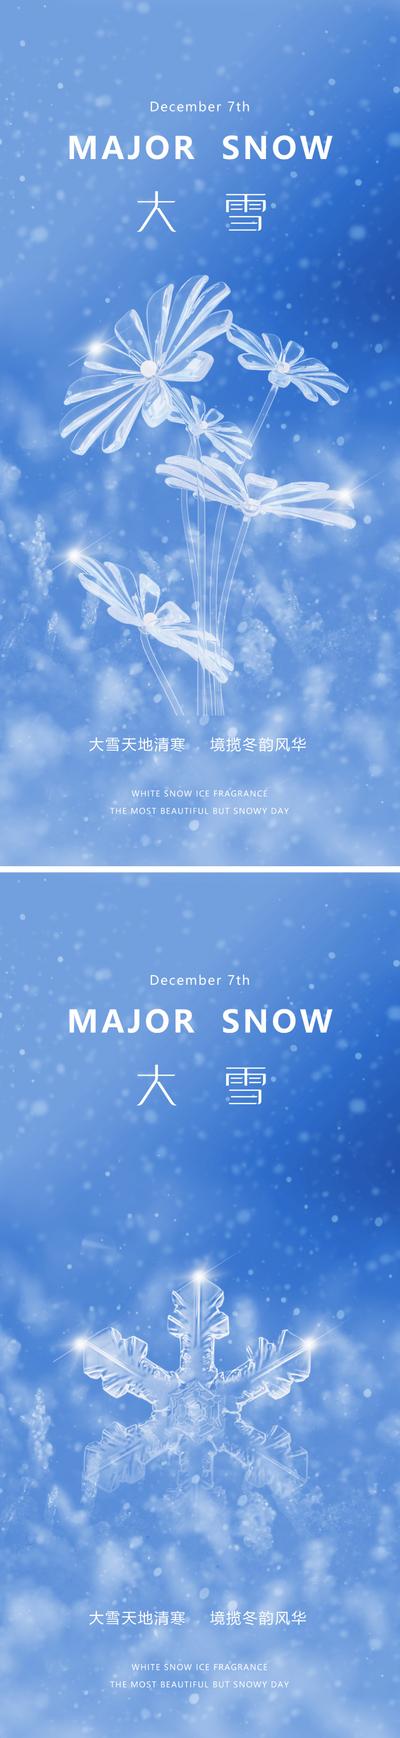 【南门网】广告 海报 地产 大雪 节气 质感 美业 水晶 花卉 雪花 下雪 冬天 唯美 意境 淡雅 高级